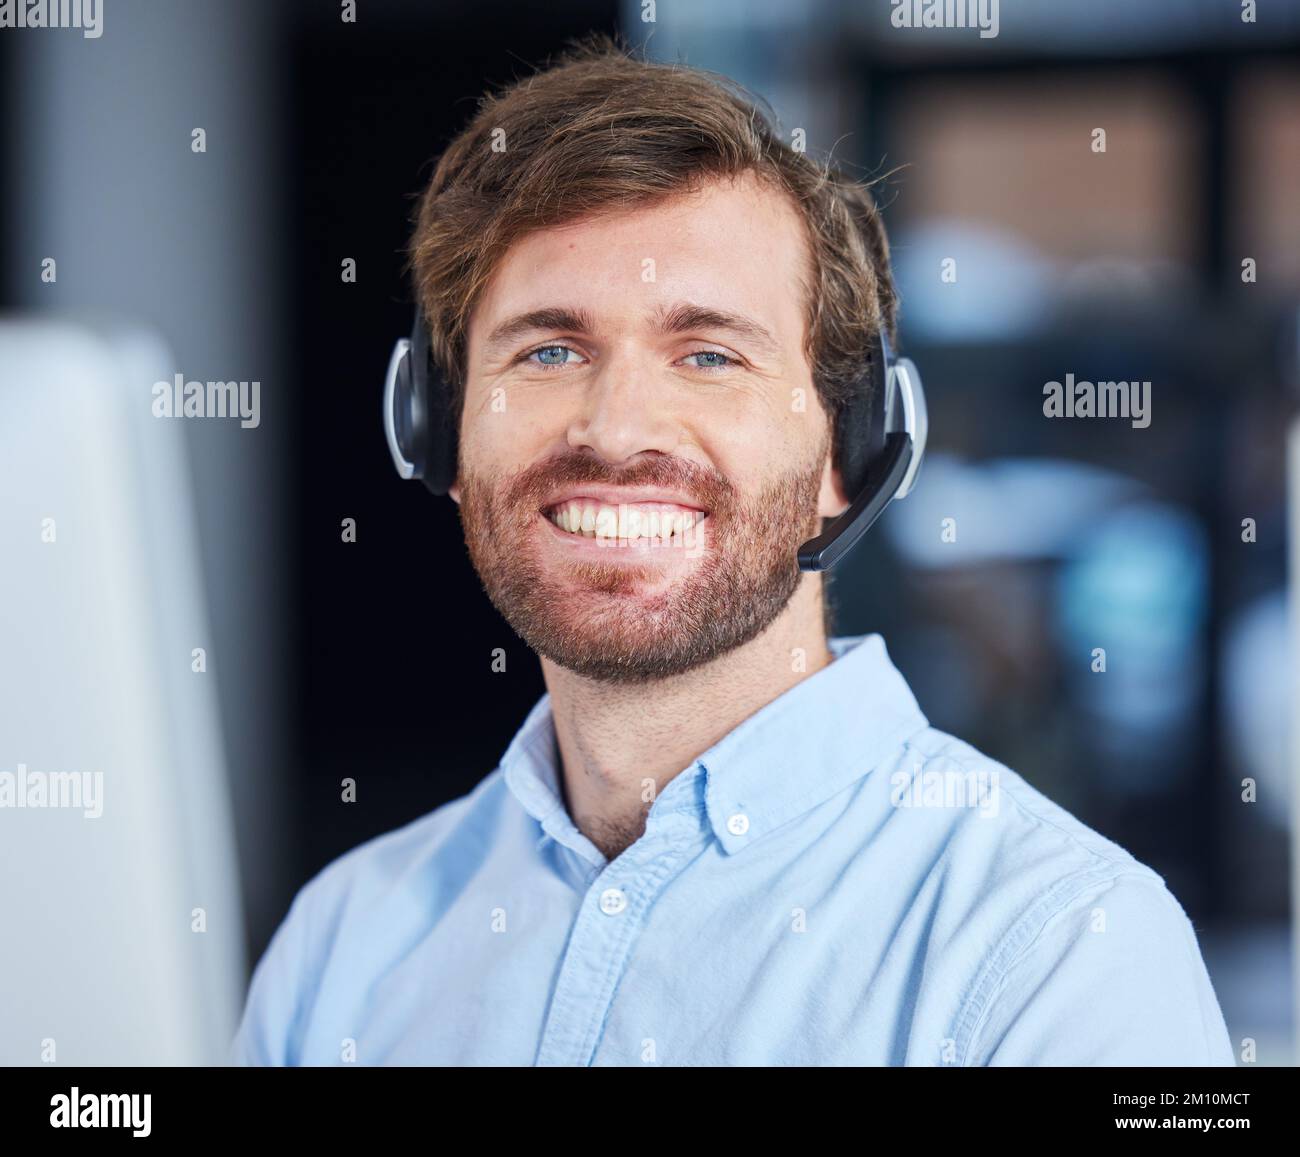 CRM, zufriedener Kundenservice oder Berater mit einem Lächeln im Büro für erfolgreiches Telemarketing oder Kommunikation. Verkaufsberater, Callcenter oder Porträt Stockfoto